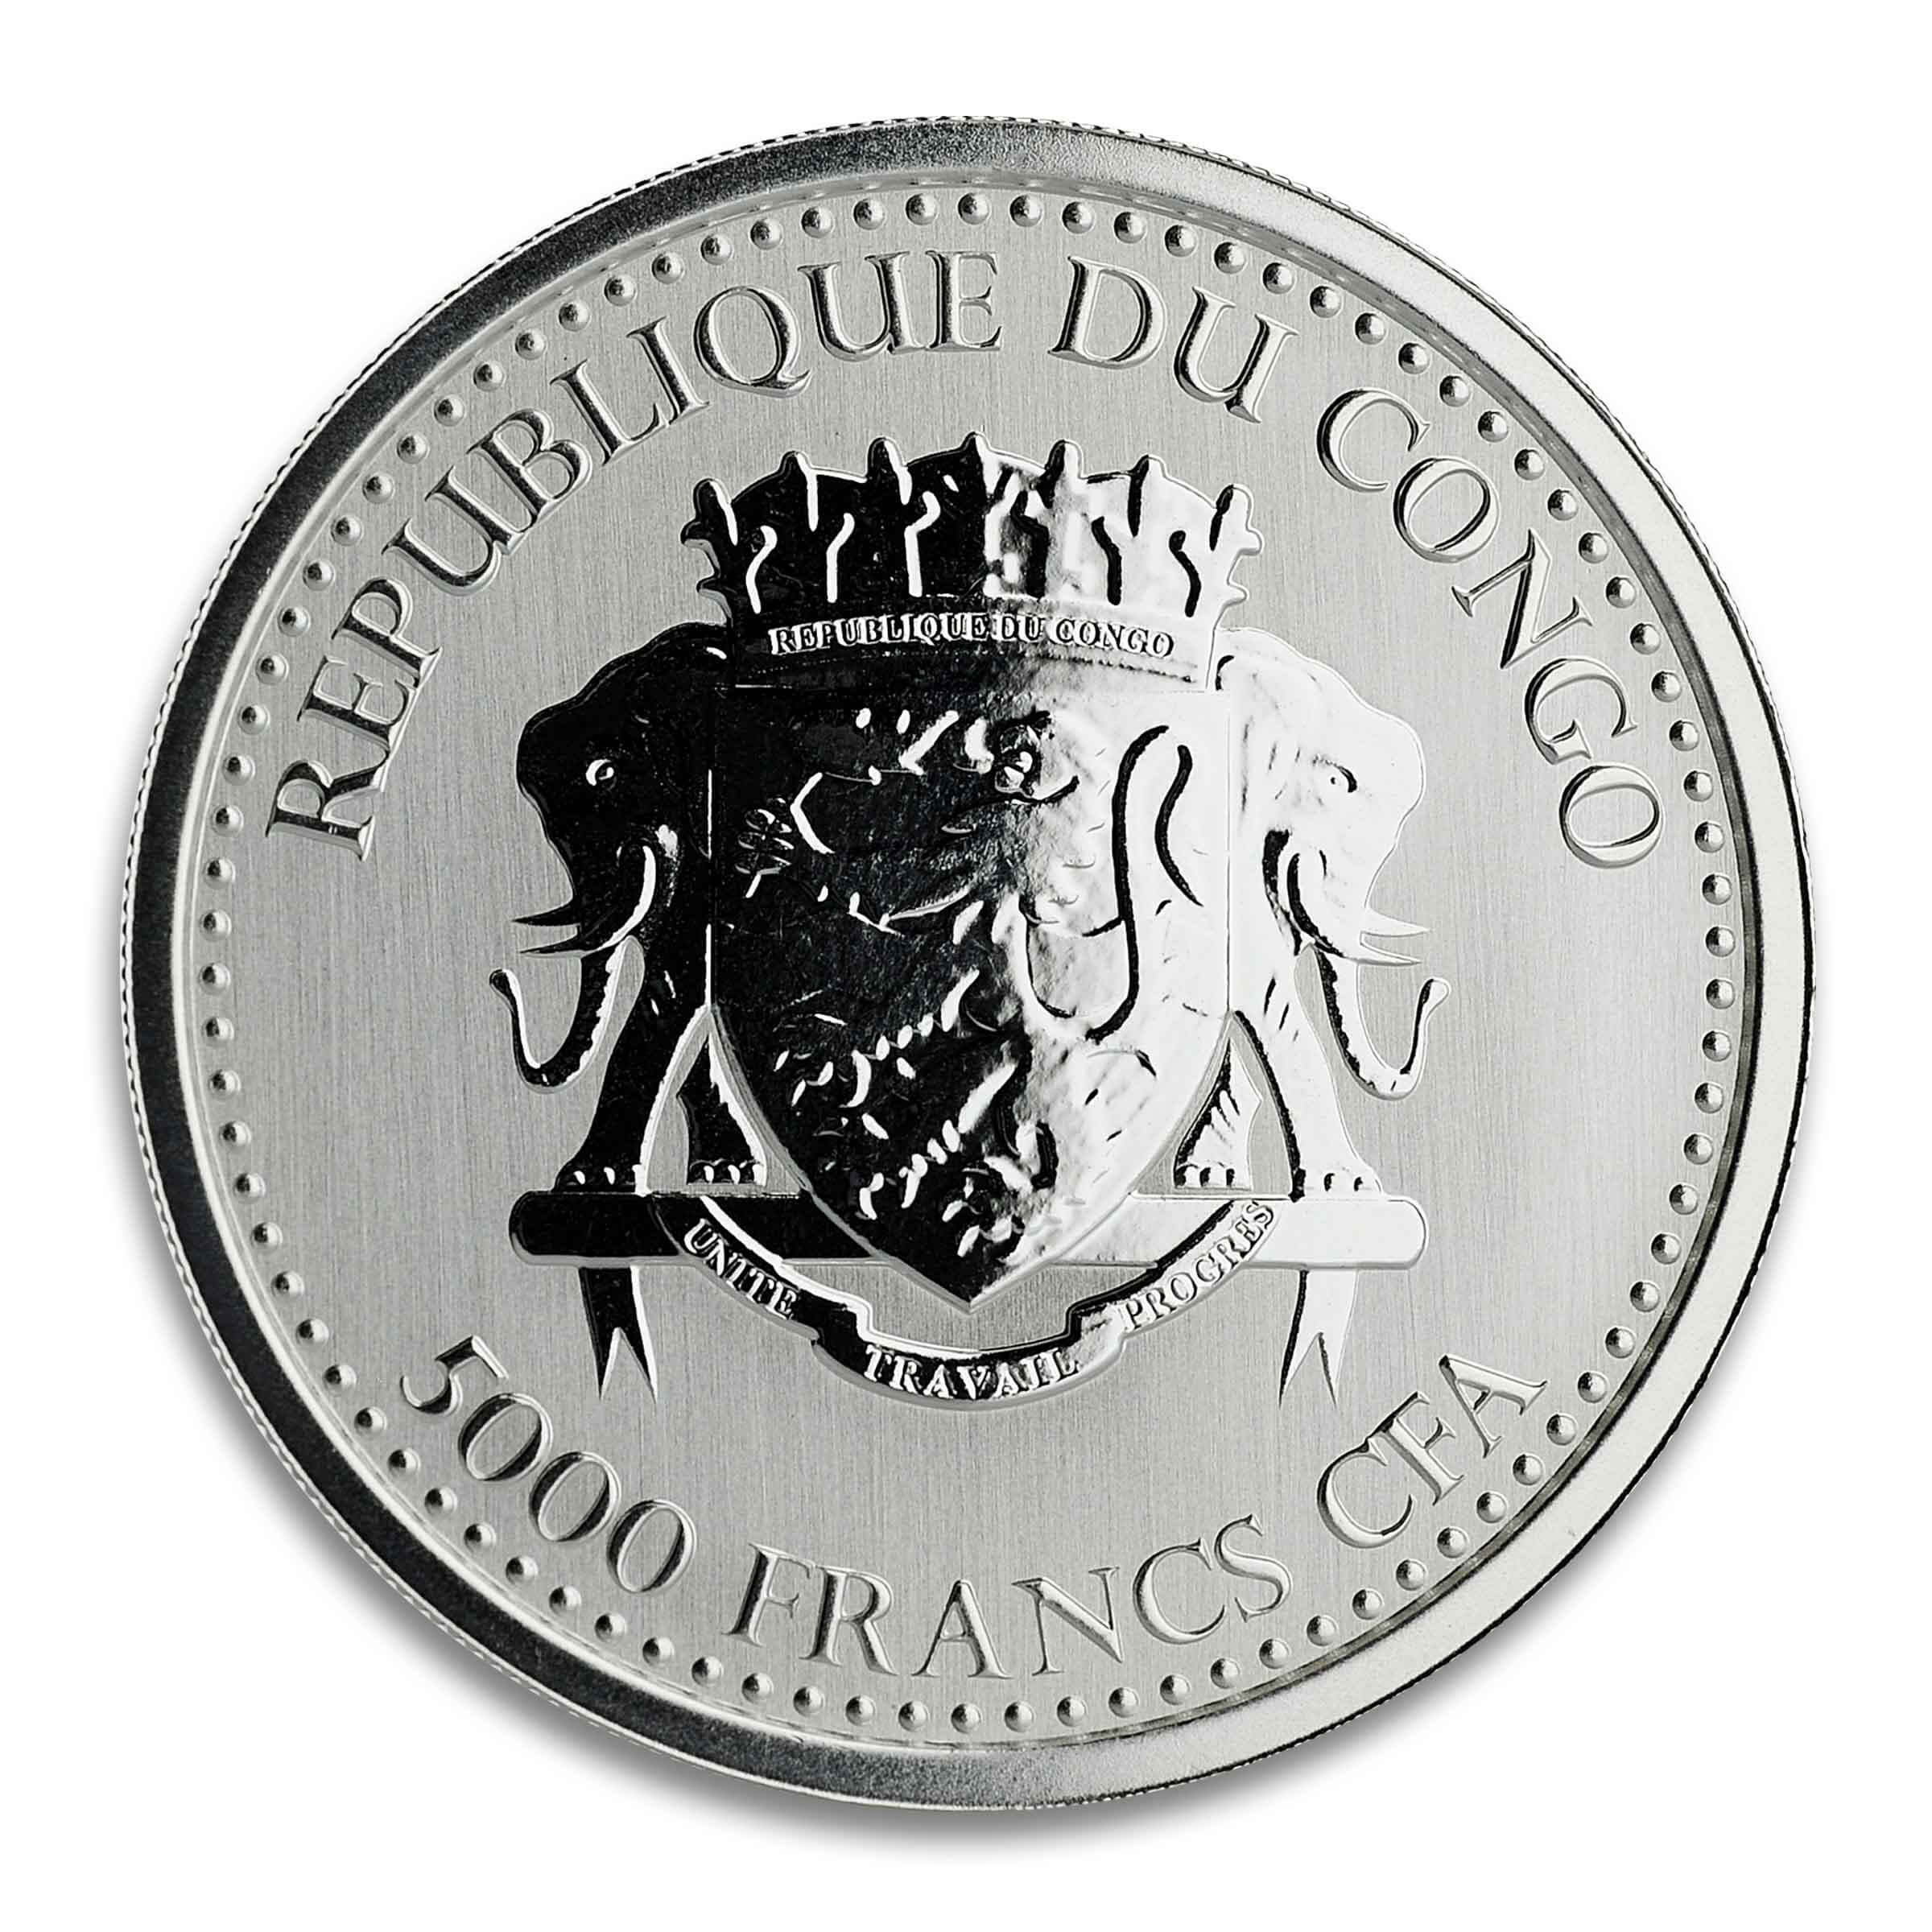 2020 Congo Gorilla 1 oz Silver Coin